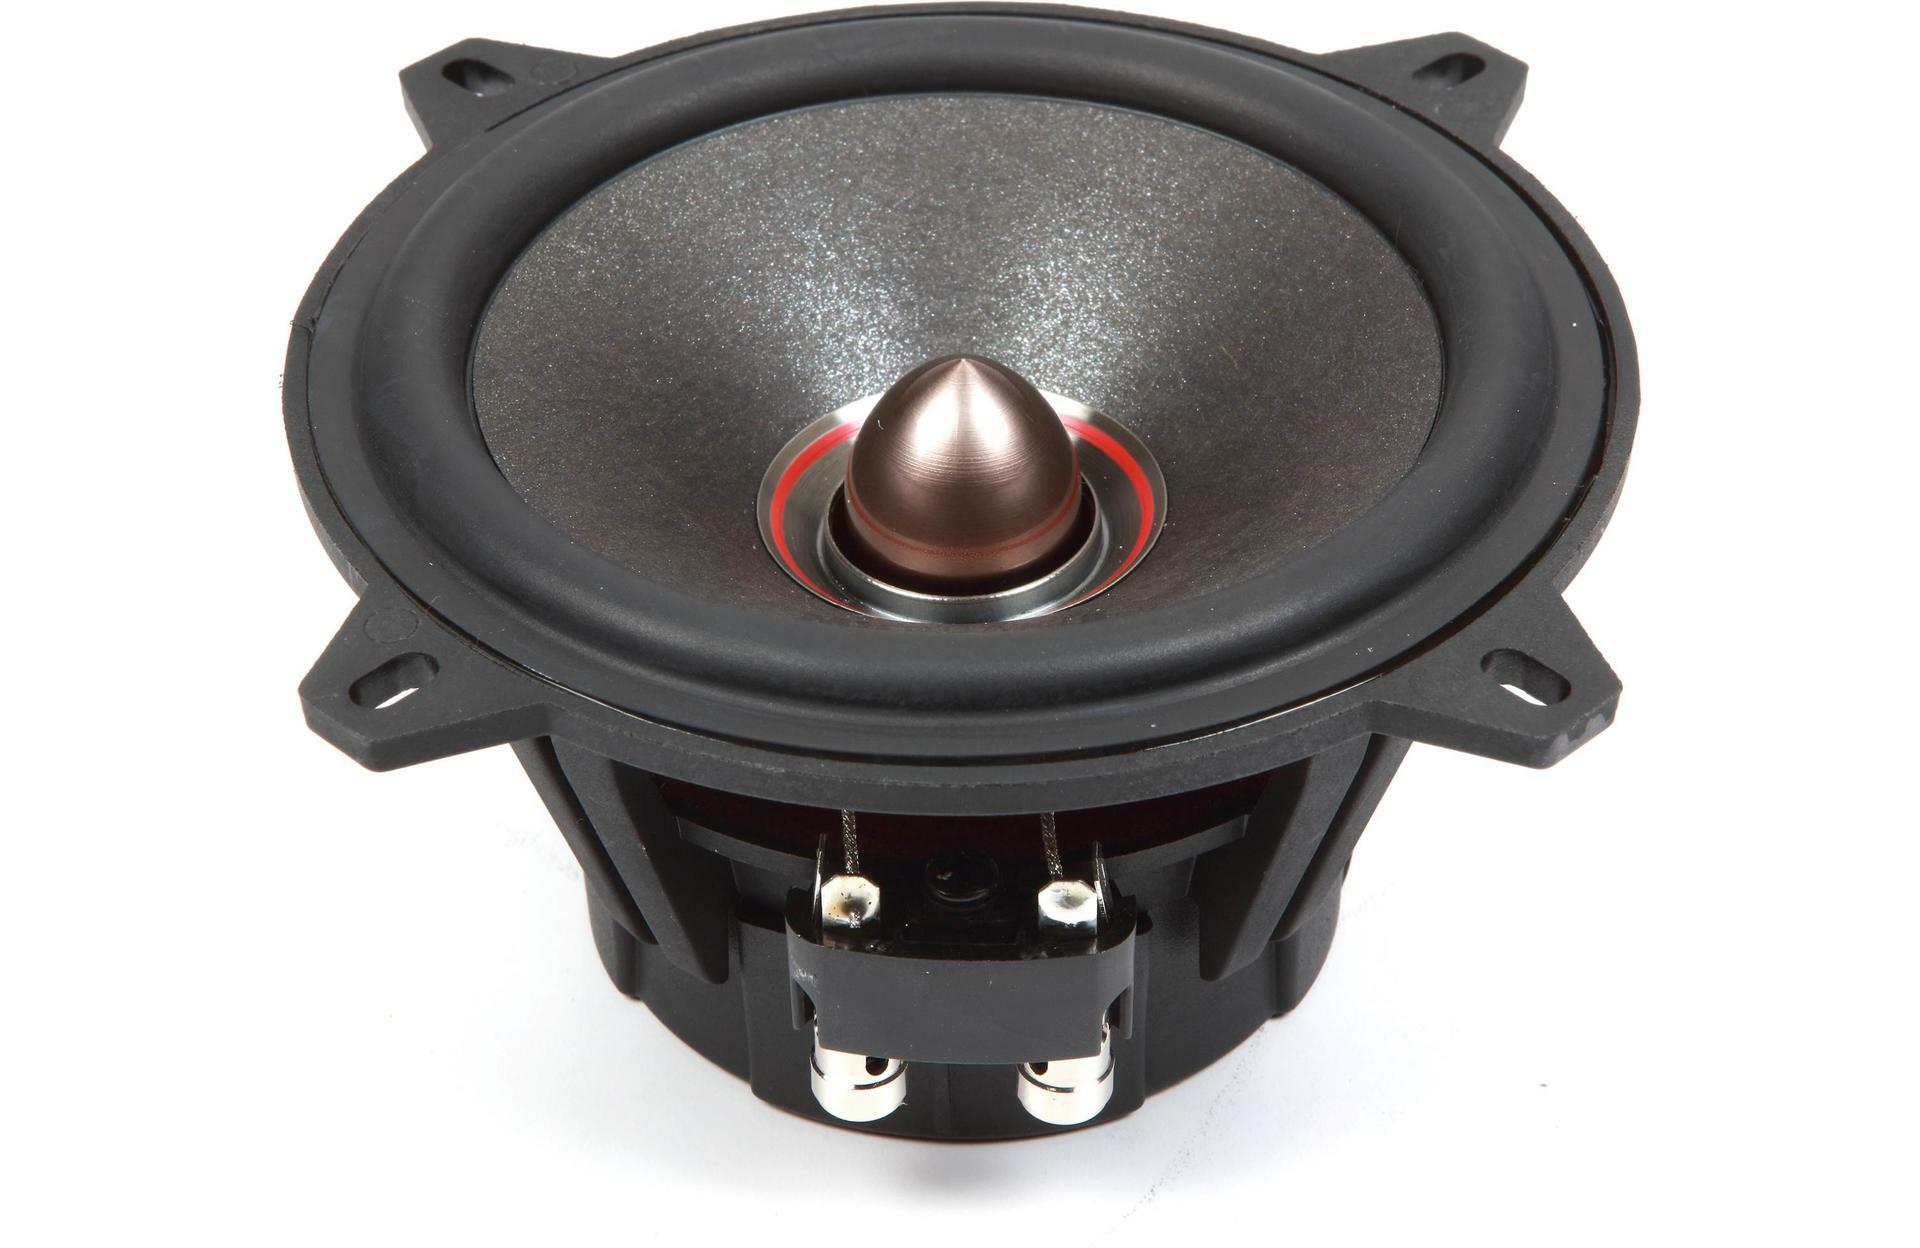 MB Quart PS1-213 Premium Series 5.25" Component Speaker System